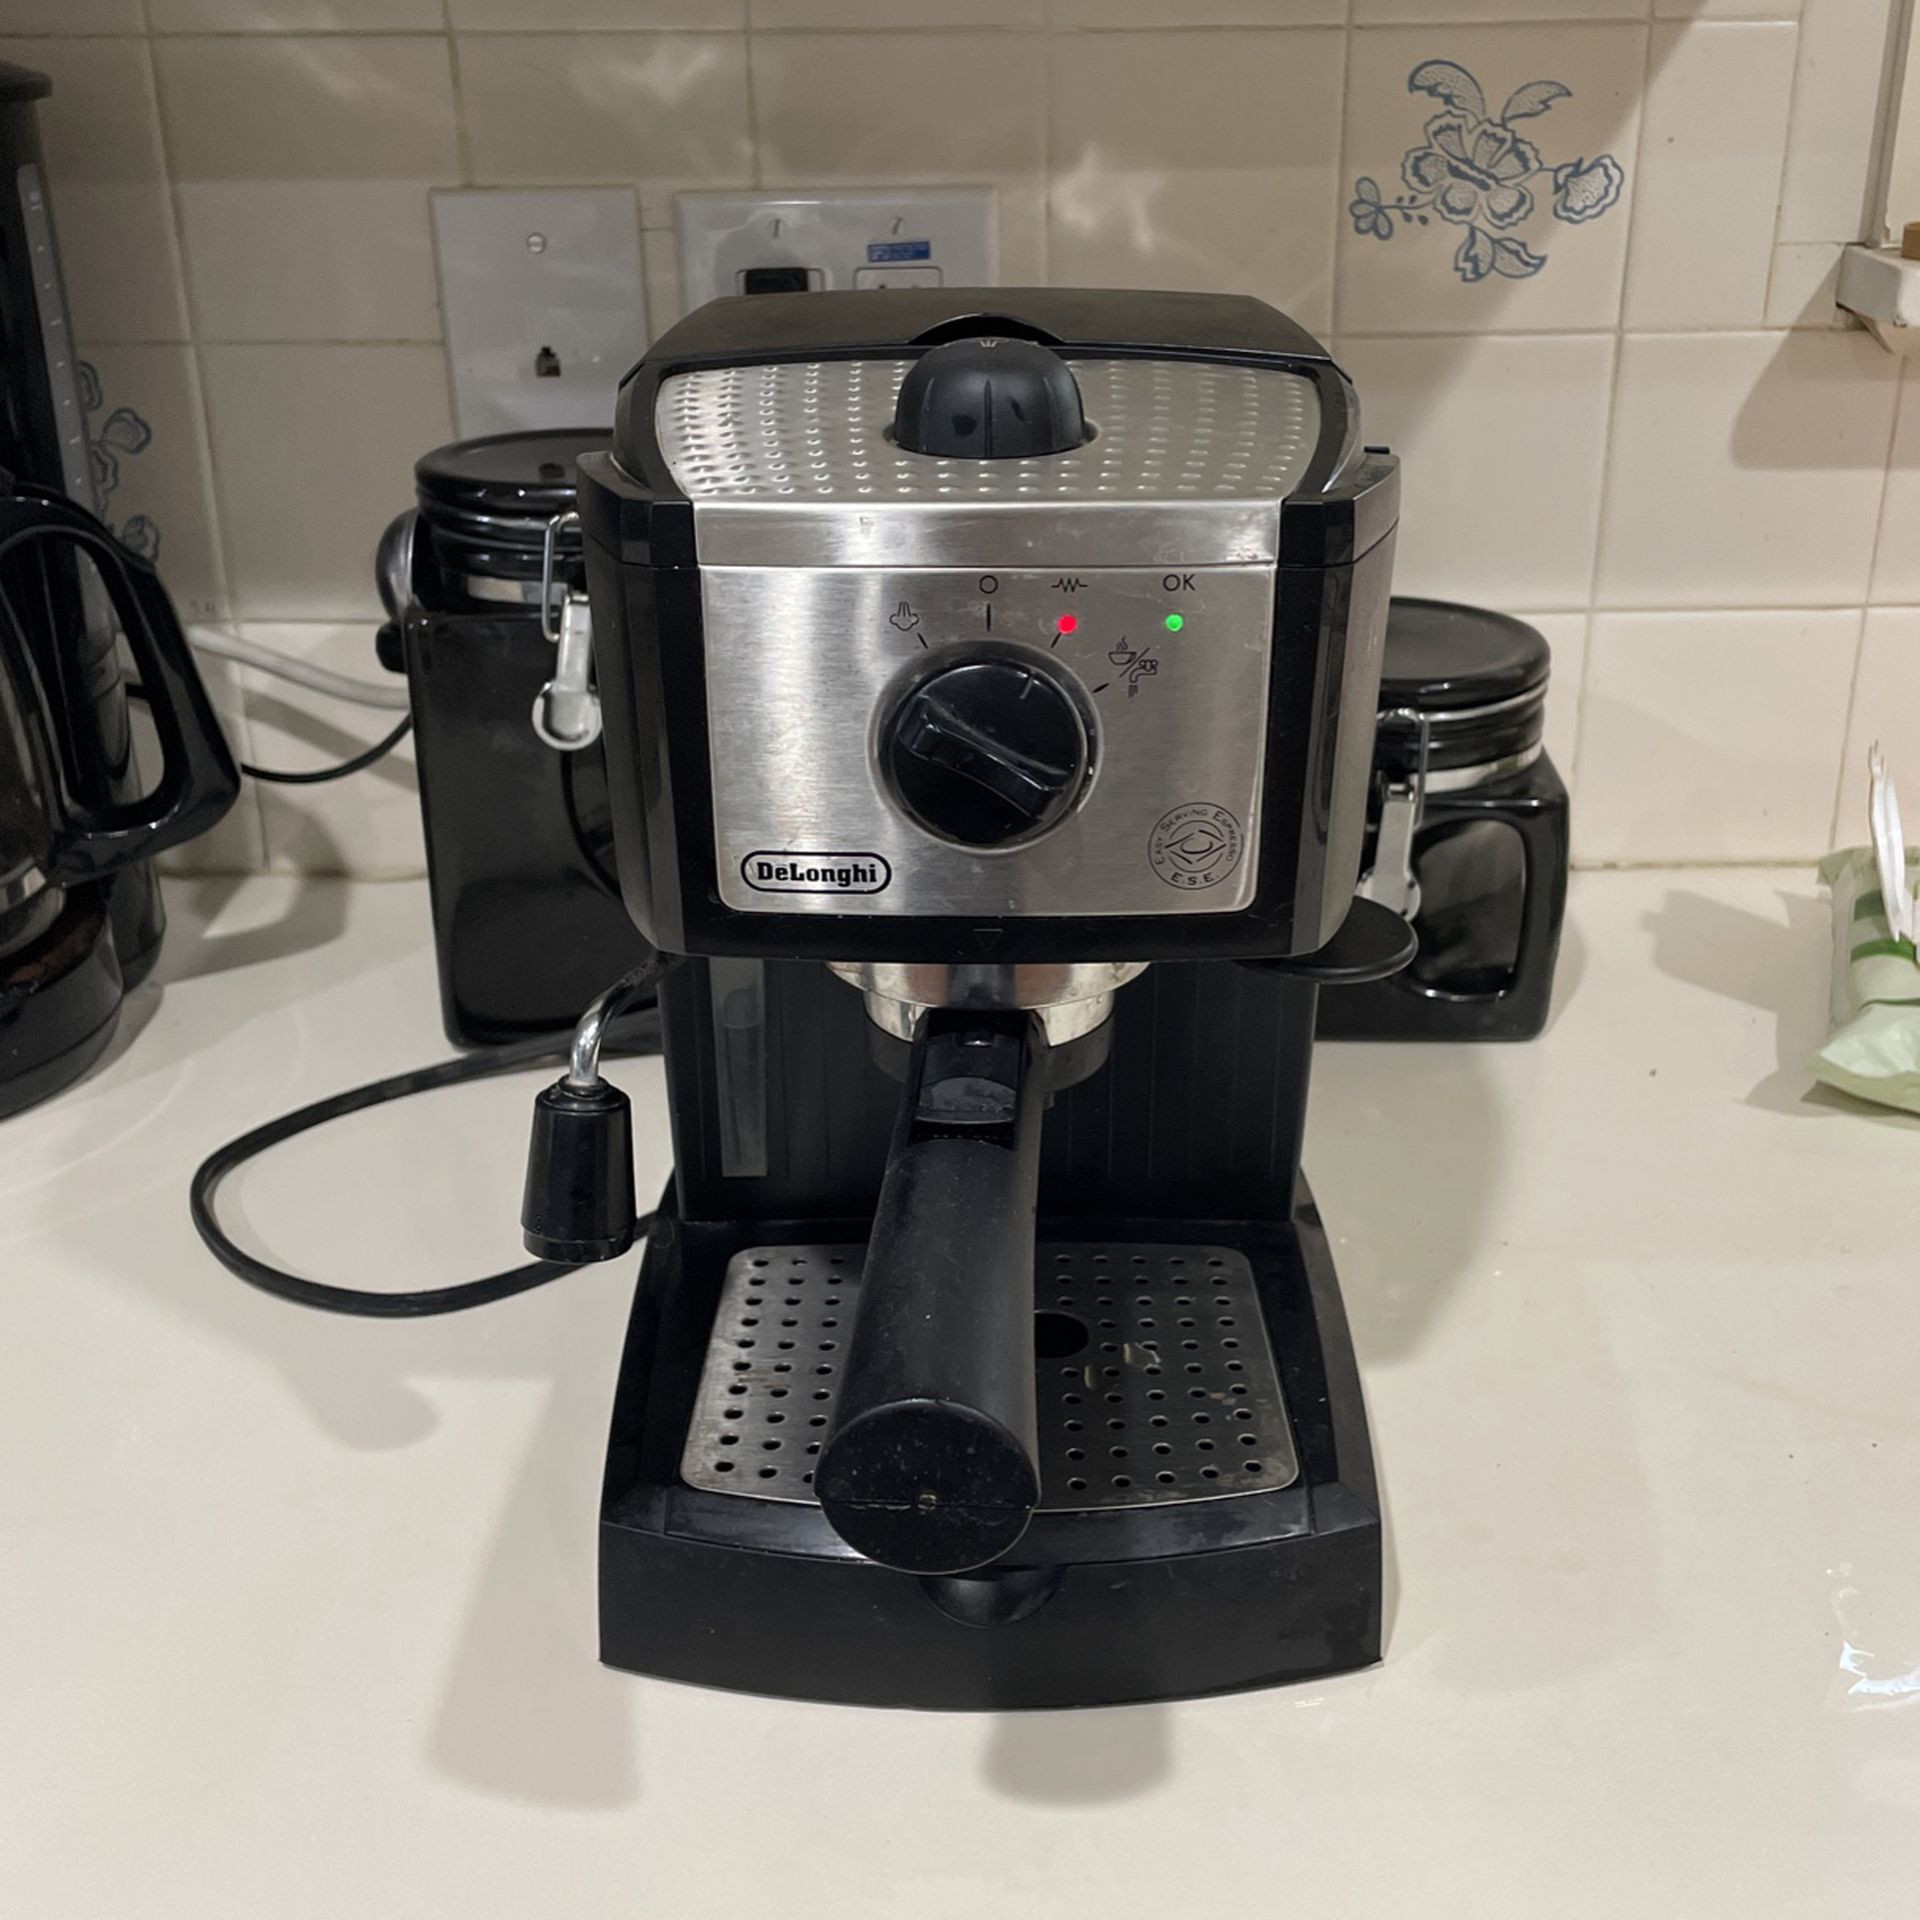 DeLonghi EC155 Espresso Coffee Maker